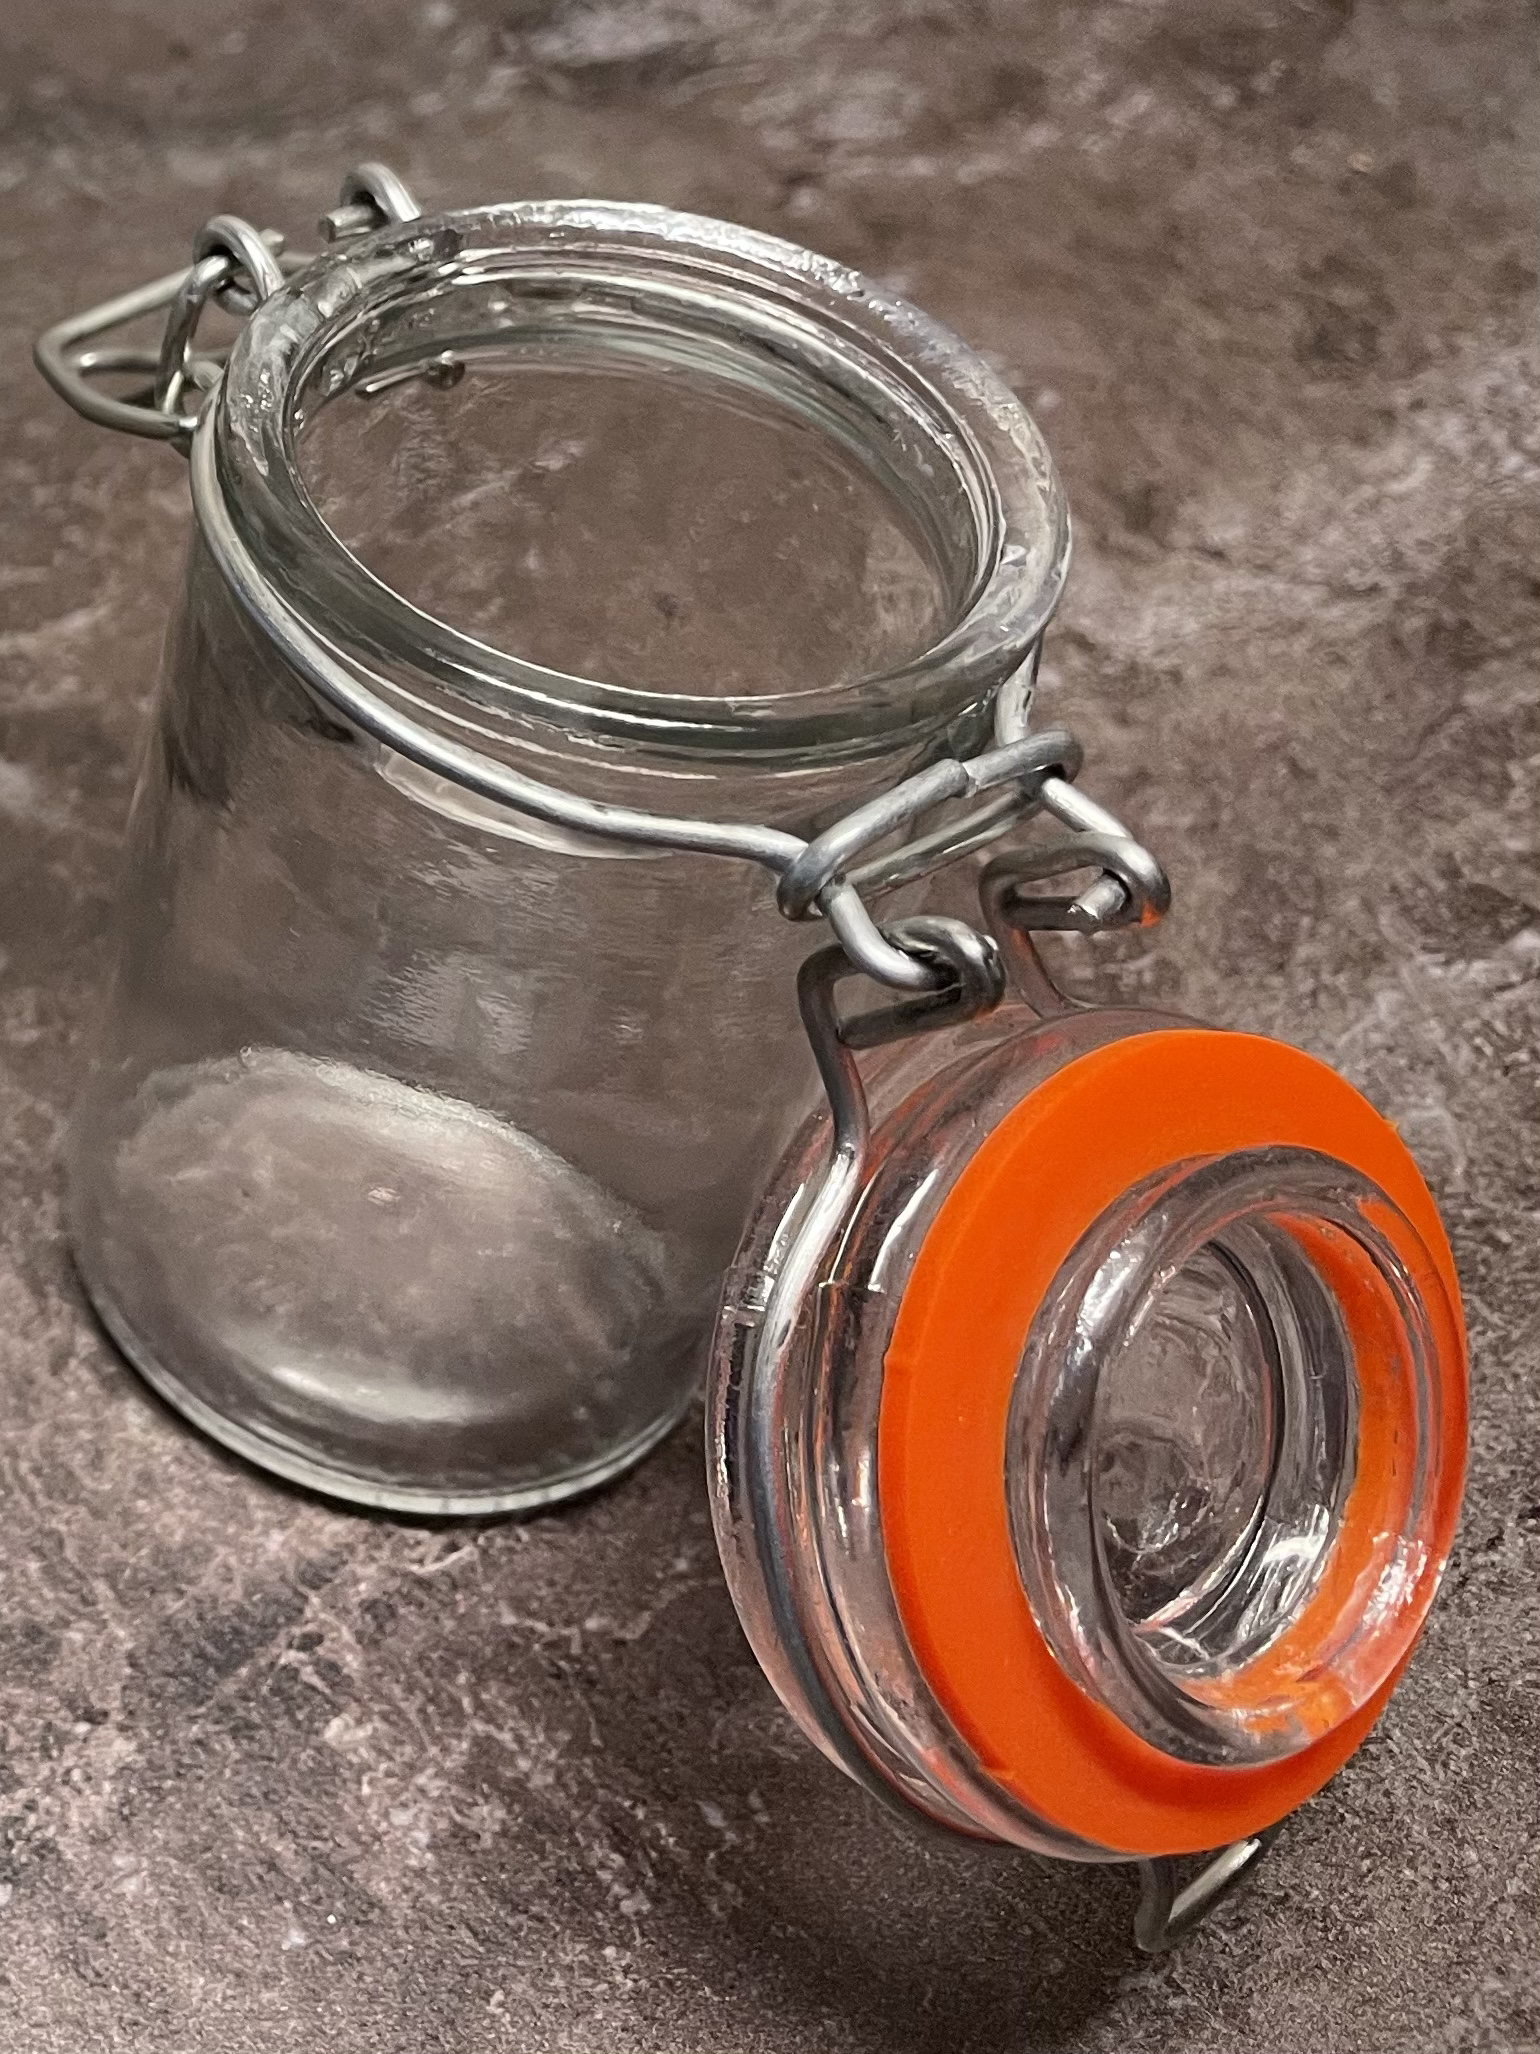 Bild zum Schritt 10 für das Bastel- und DIY-Abenteuer für Kinder: 'Füllt das Kräutersalz in ein leeres Gewürzglas.'